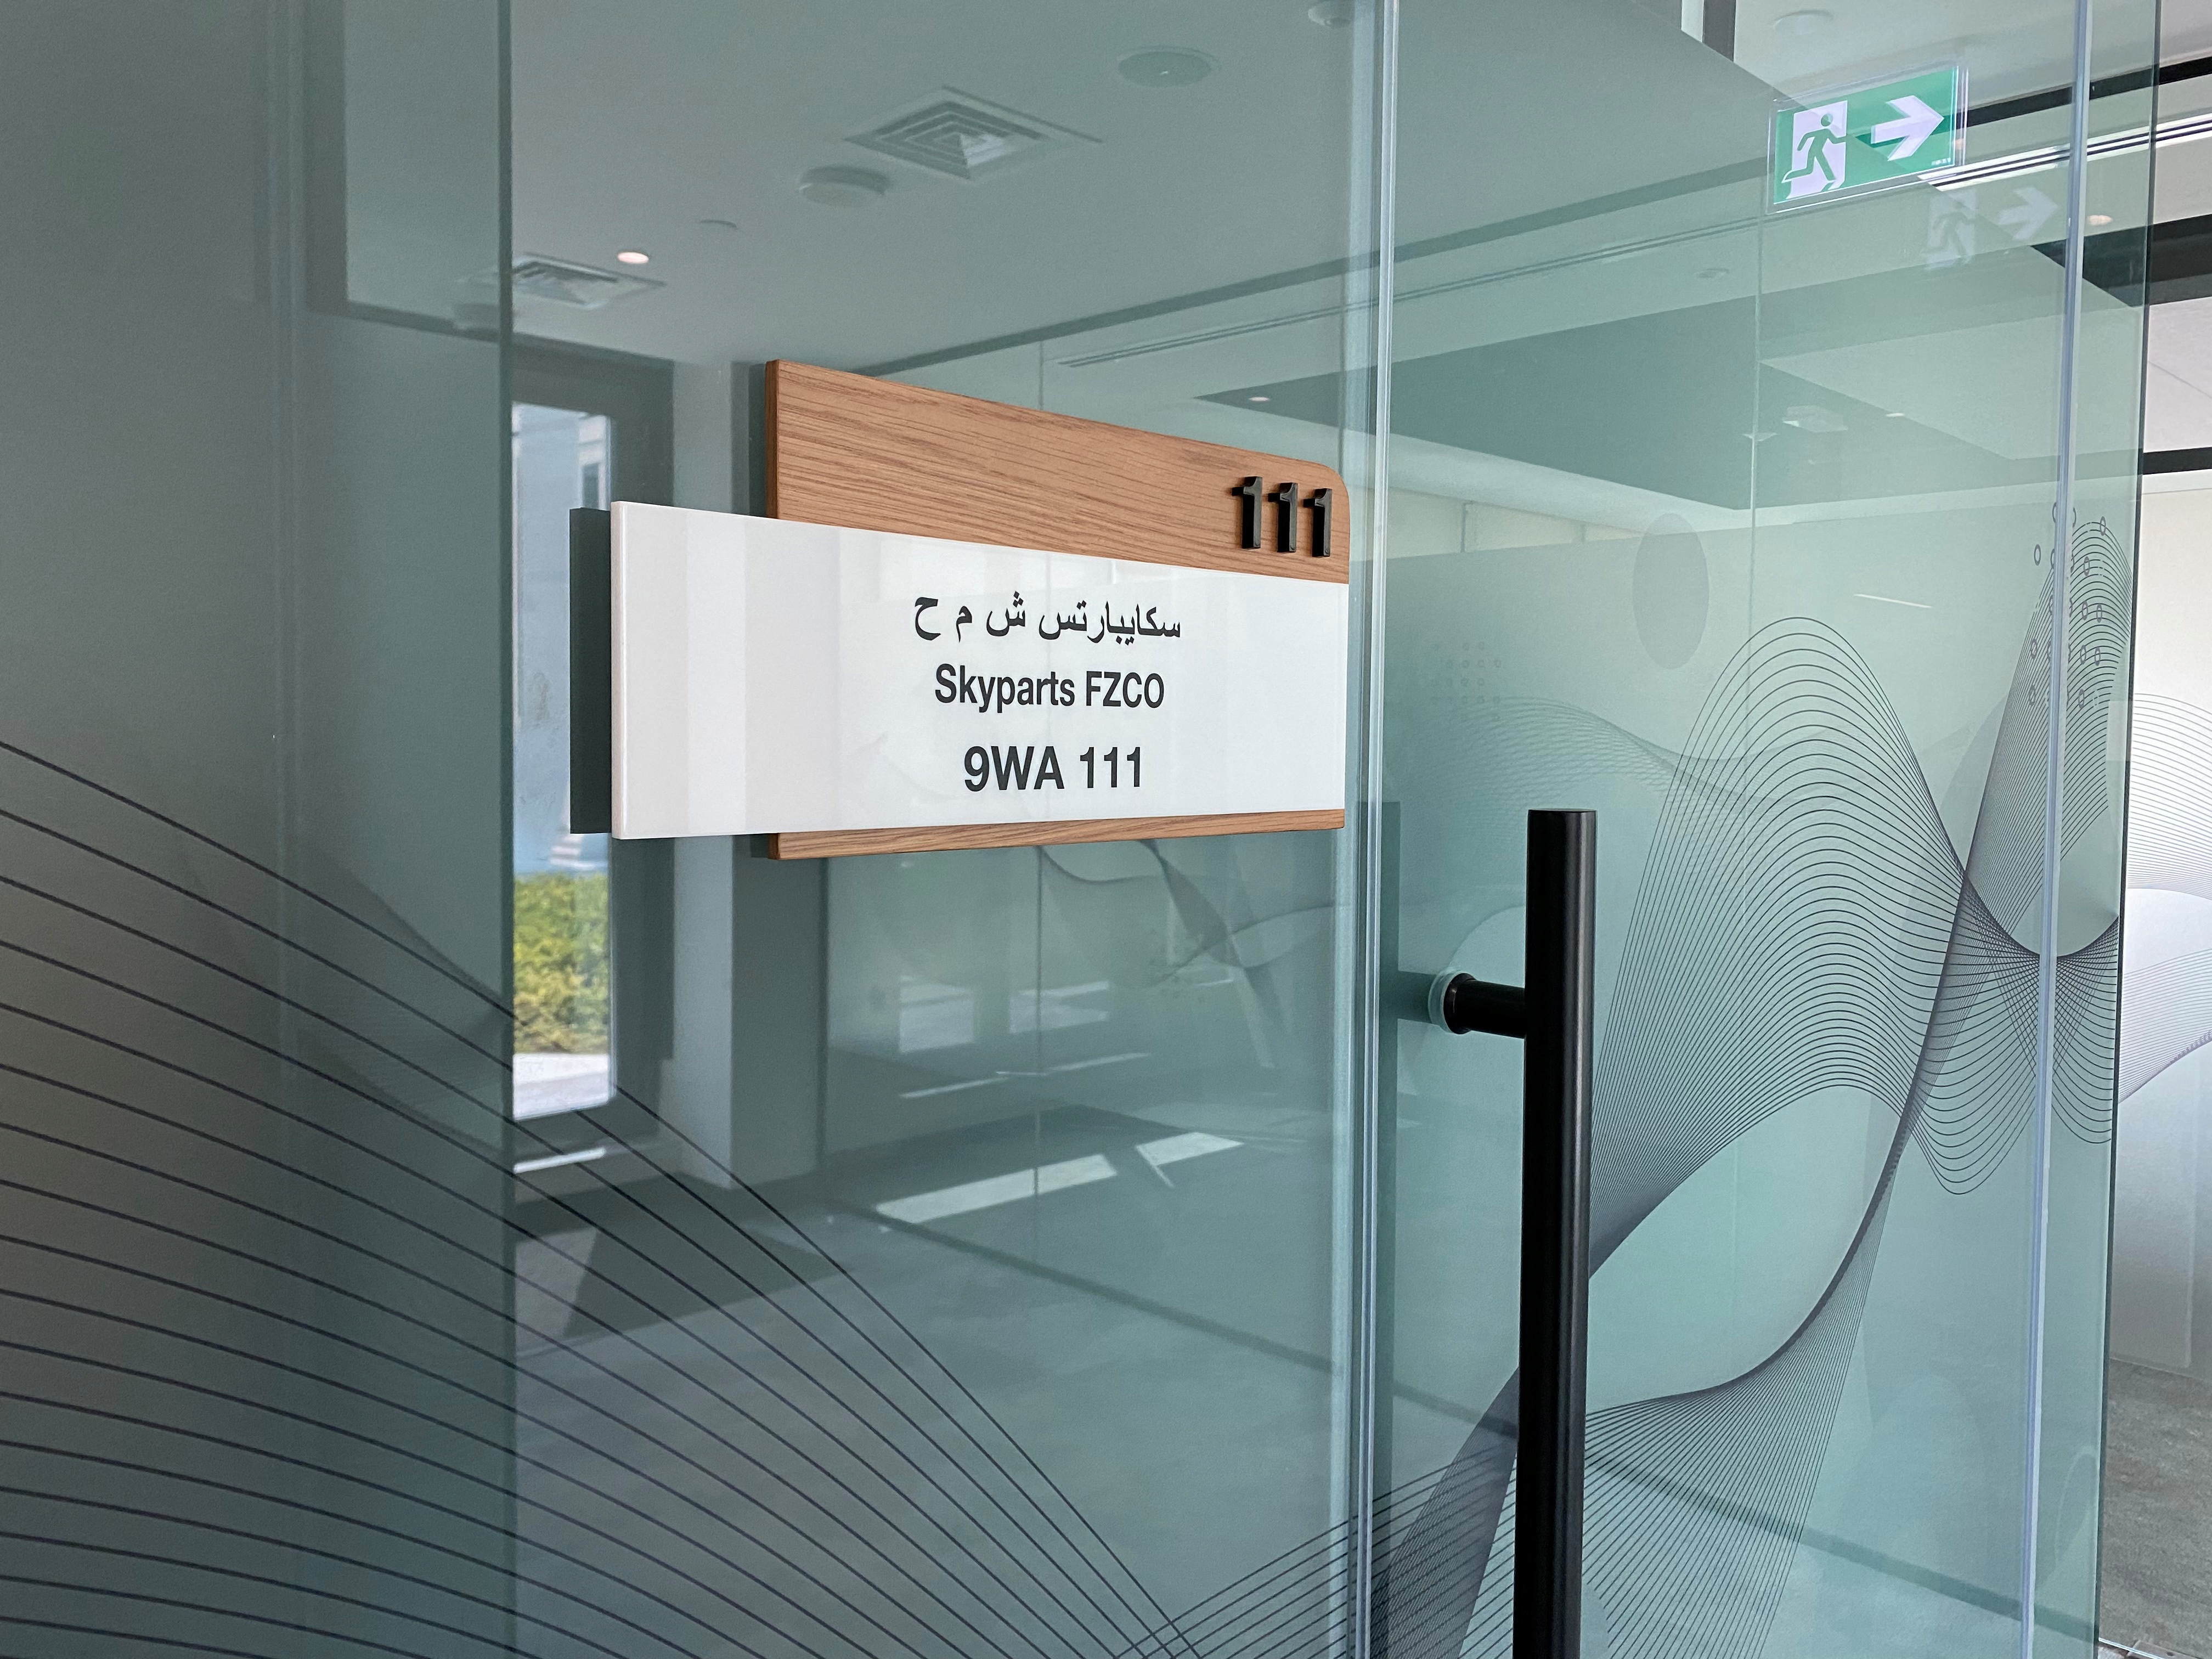 Однокомнатный офис дистрибьютора авиационных запчастей Skyparts FZCO в одной из свободных зон Дубая.